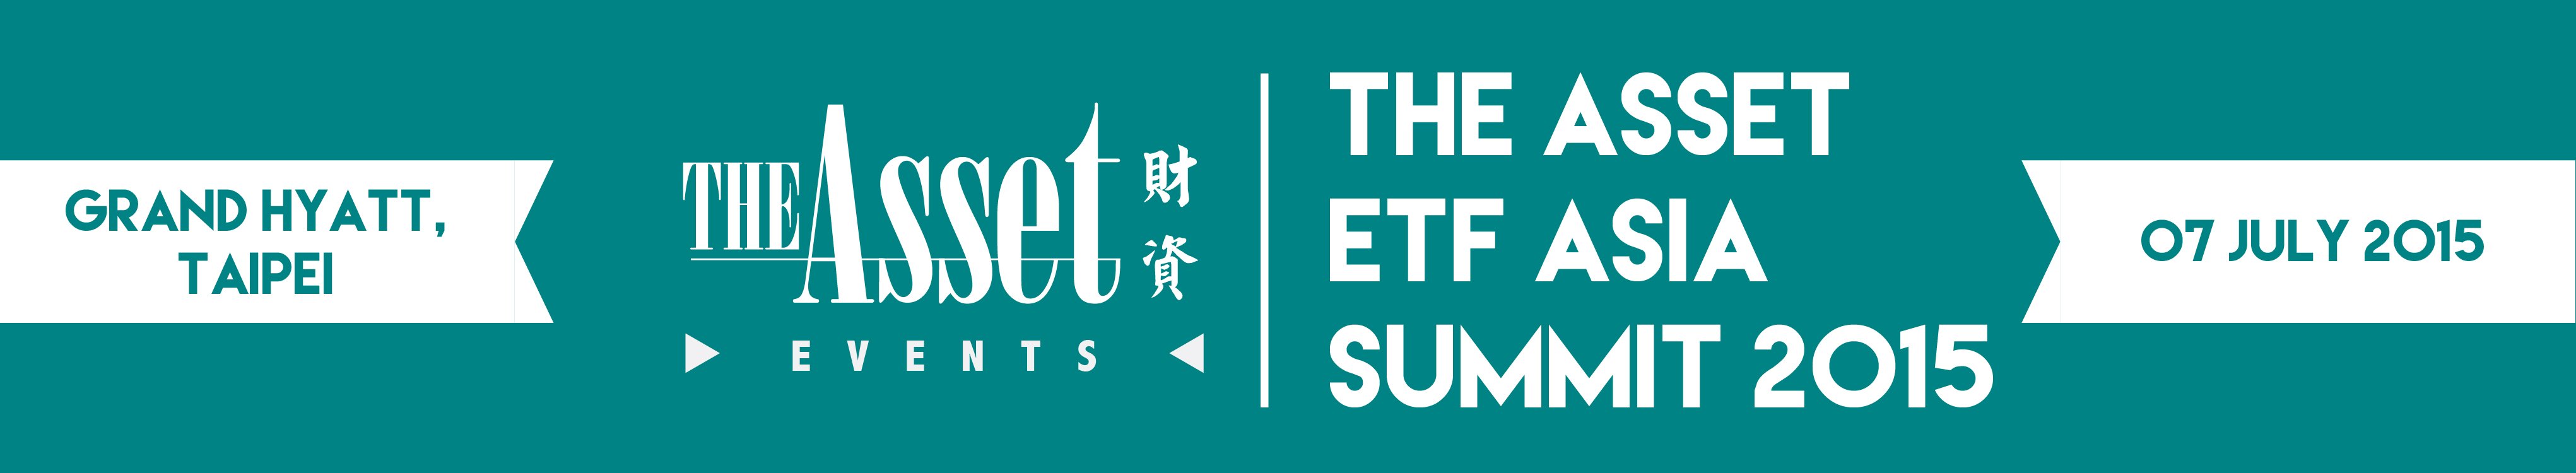 The Asset ETF Asia Summit